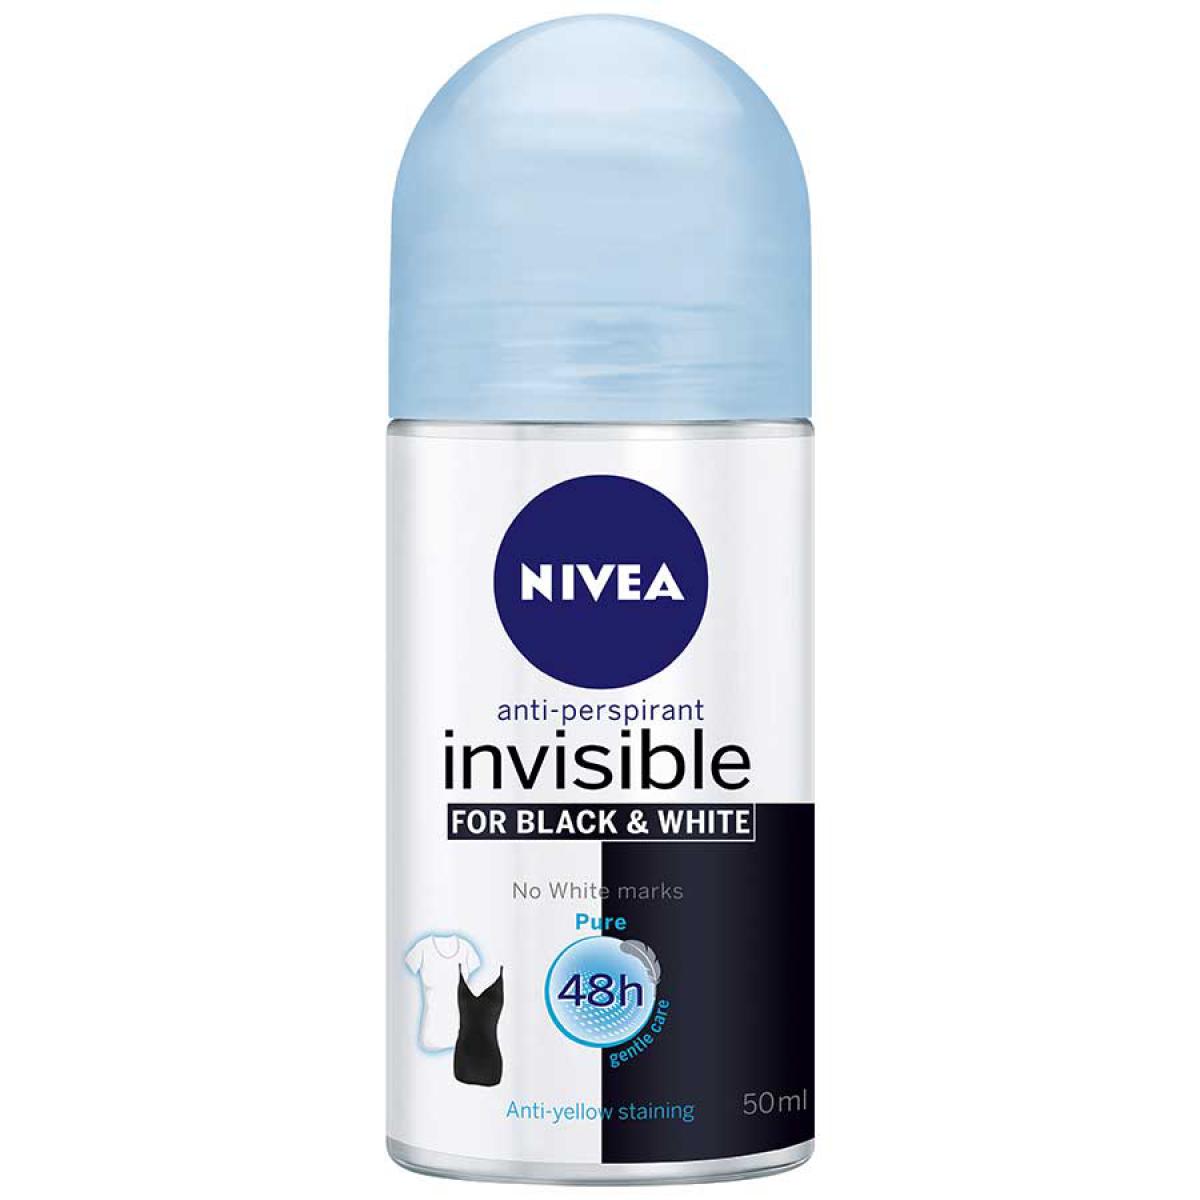 رول اینویزیبل بلک اند وایت فرش زنانه - Nivea Invisible Black And White Pure Roll On Deodorant For Women